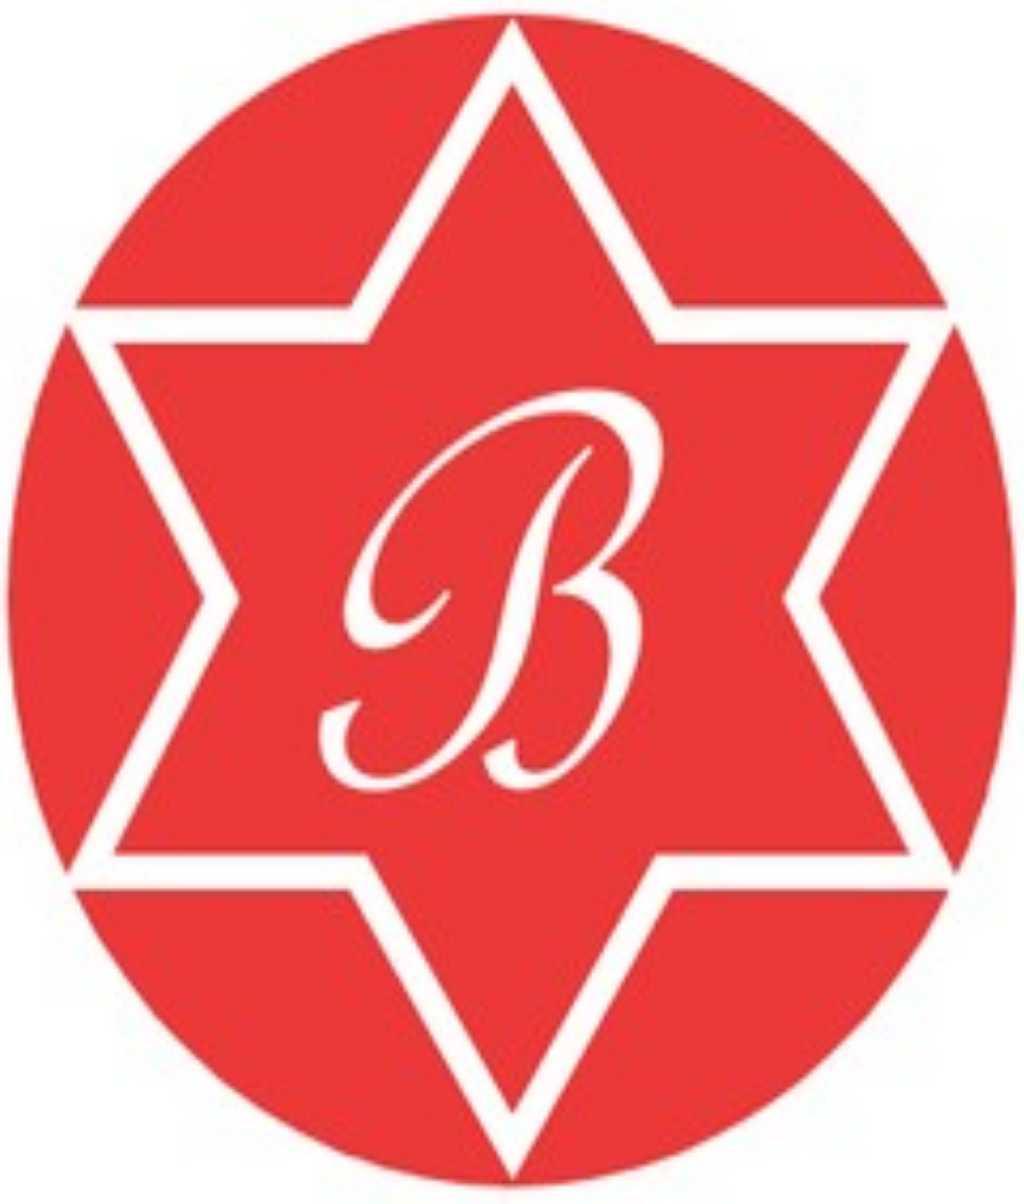 Bhuvi Enterprises